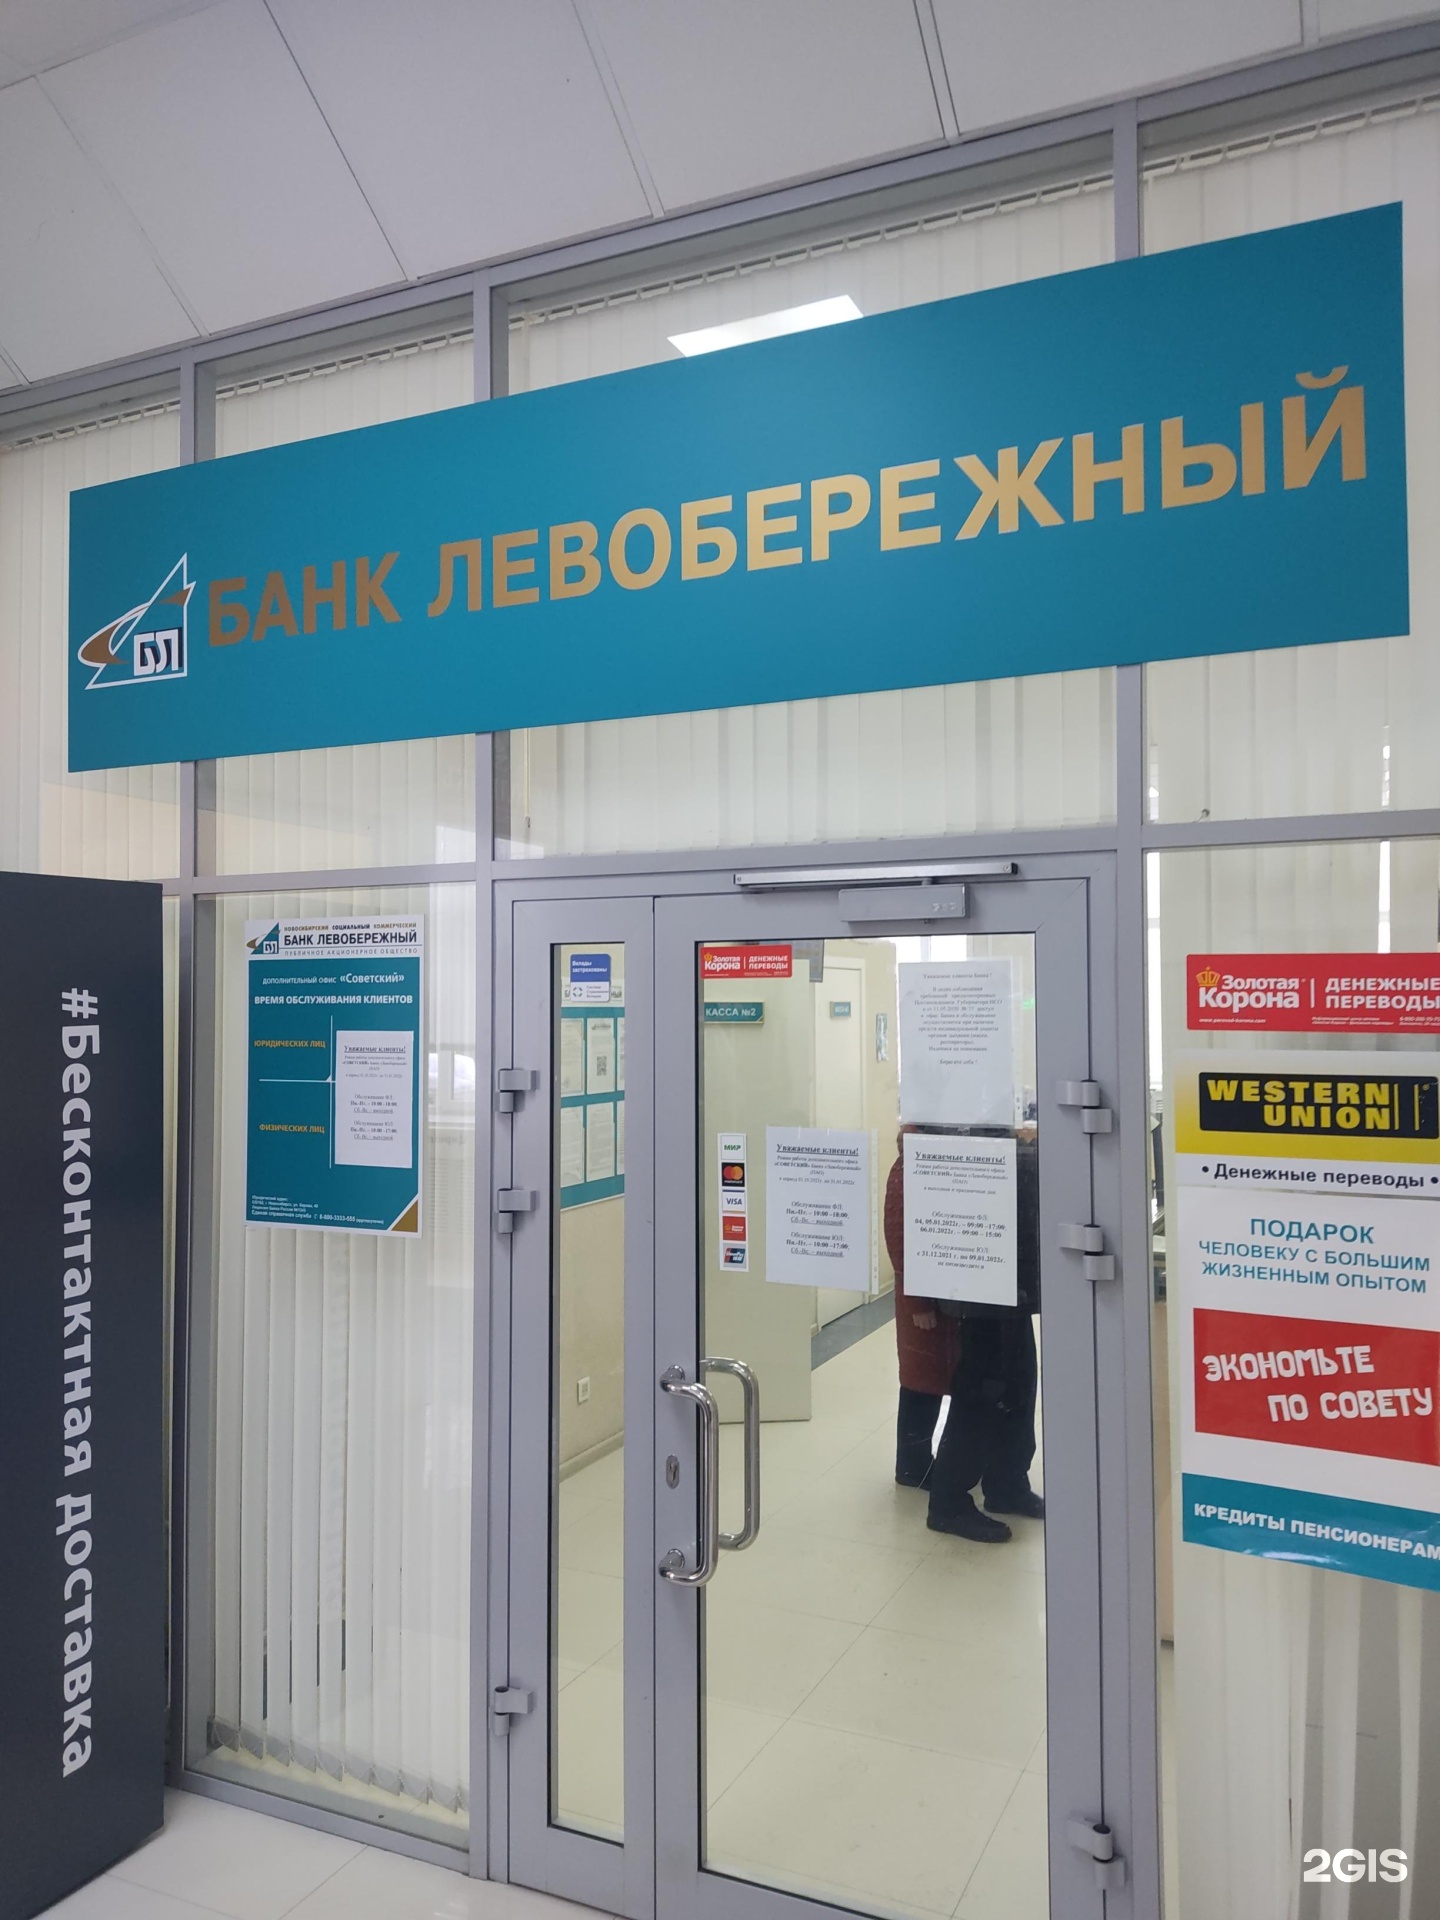 Банк левобережный новосибирск телефон